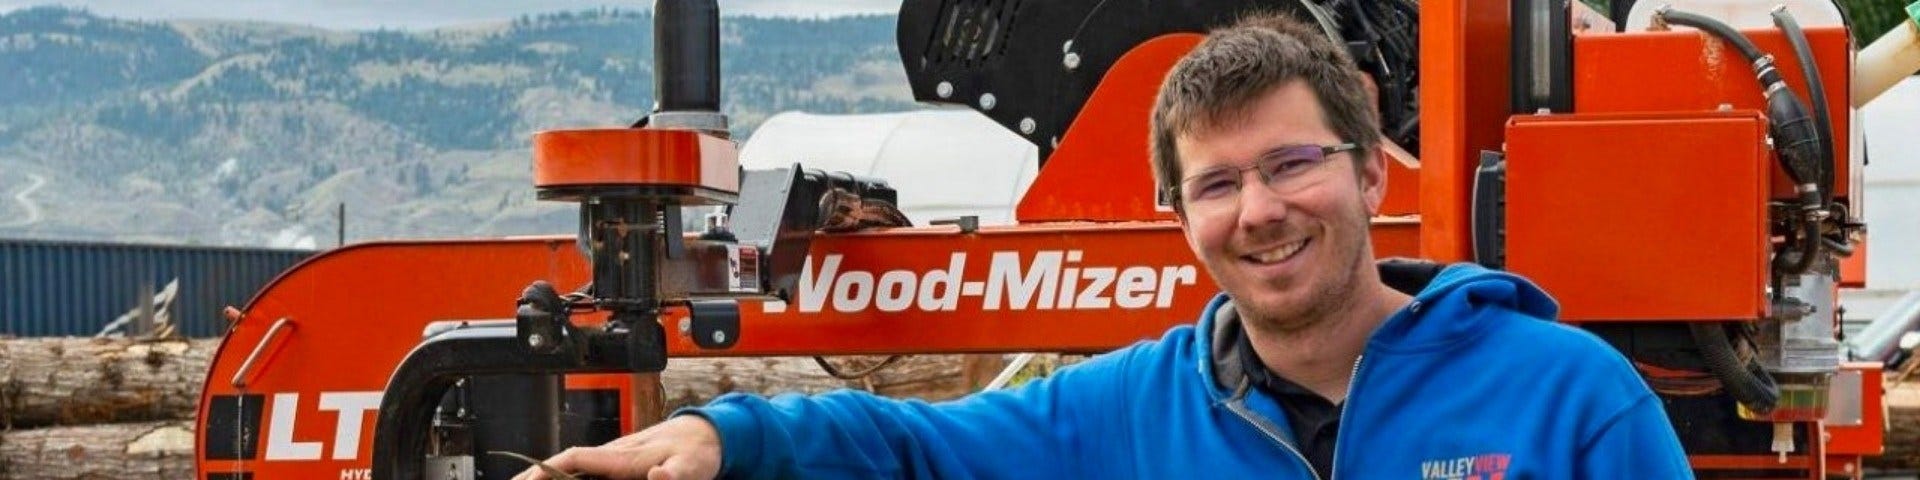 Sawyer with Wood-Mizer scierie mobile